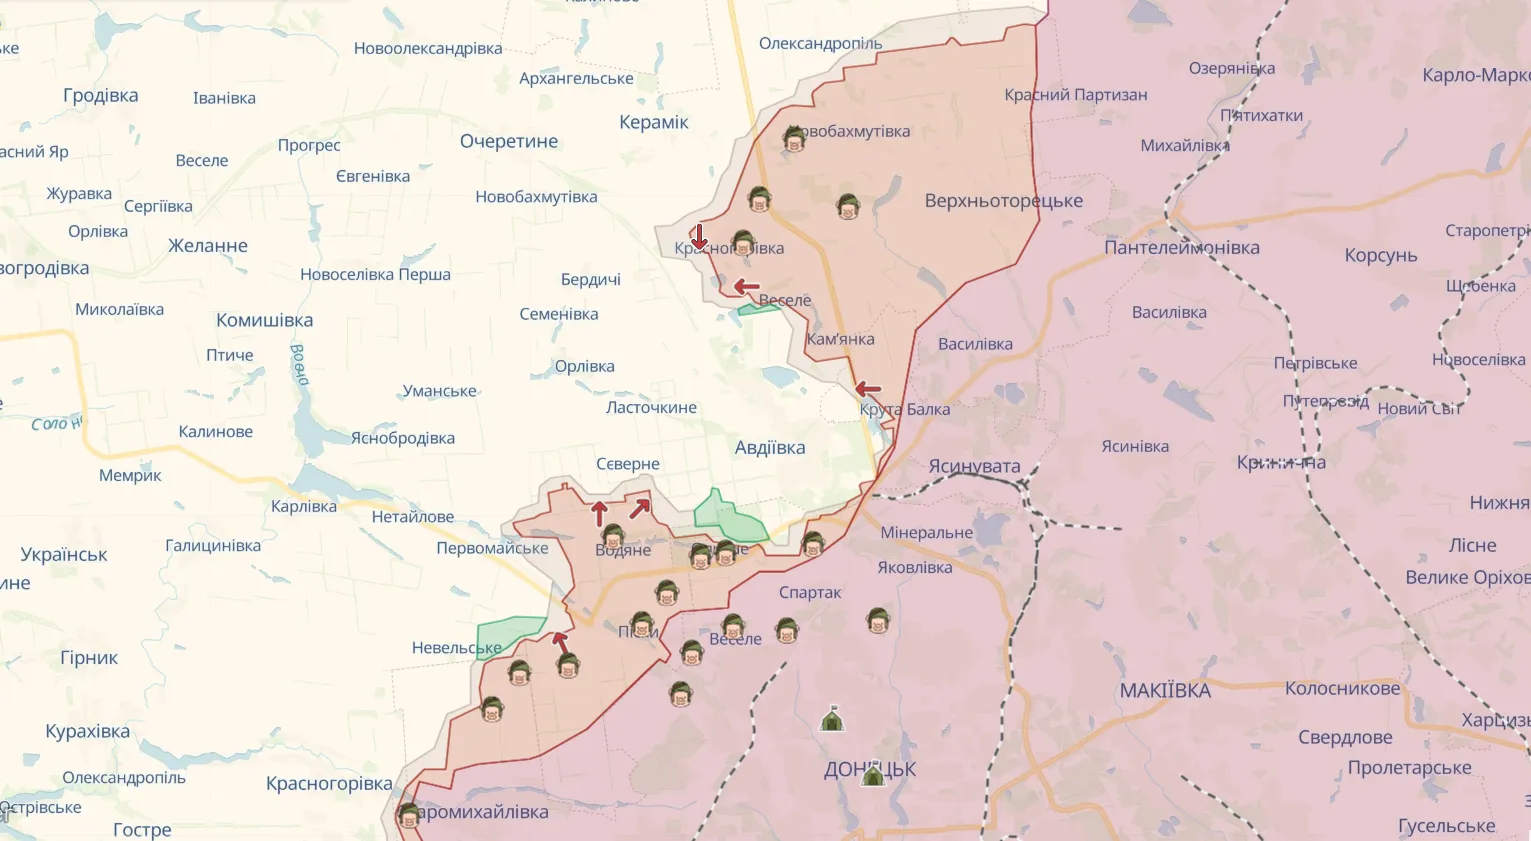 Разведка Британии рассказала, какие силы РФ бросила в бои за Авдеевку, и оценила потери агрессора. Карта